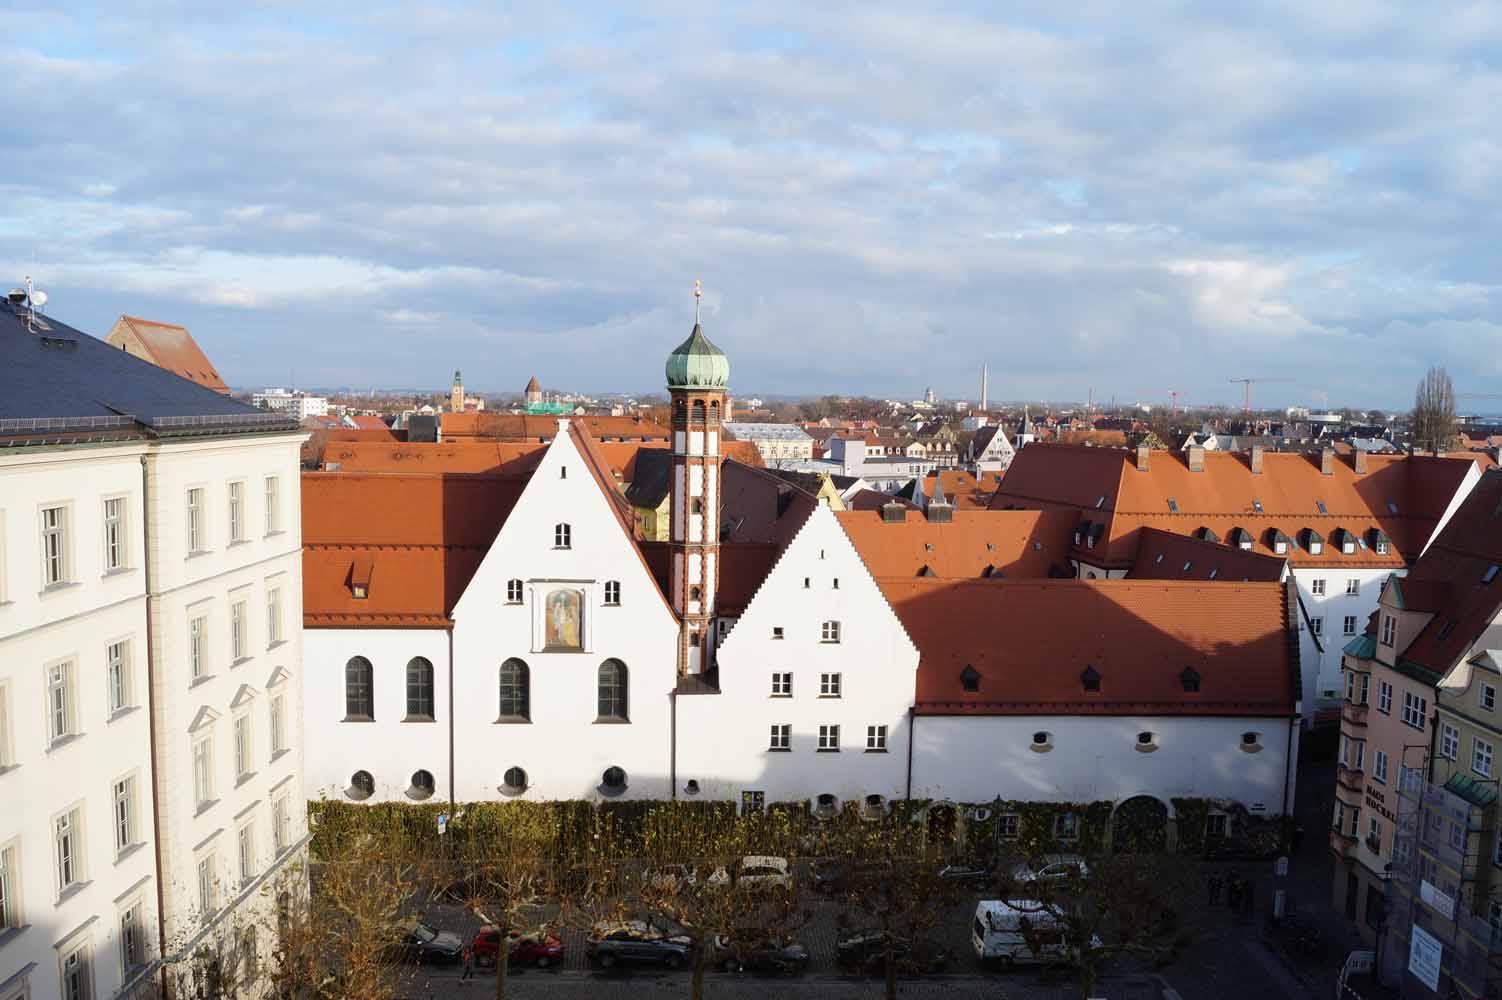 Augsburg Sehenswürdigkeiten – die Fuggerstadt an einem Tag erleben